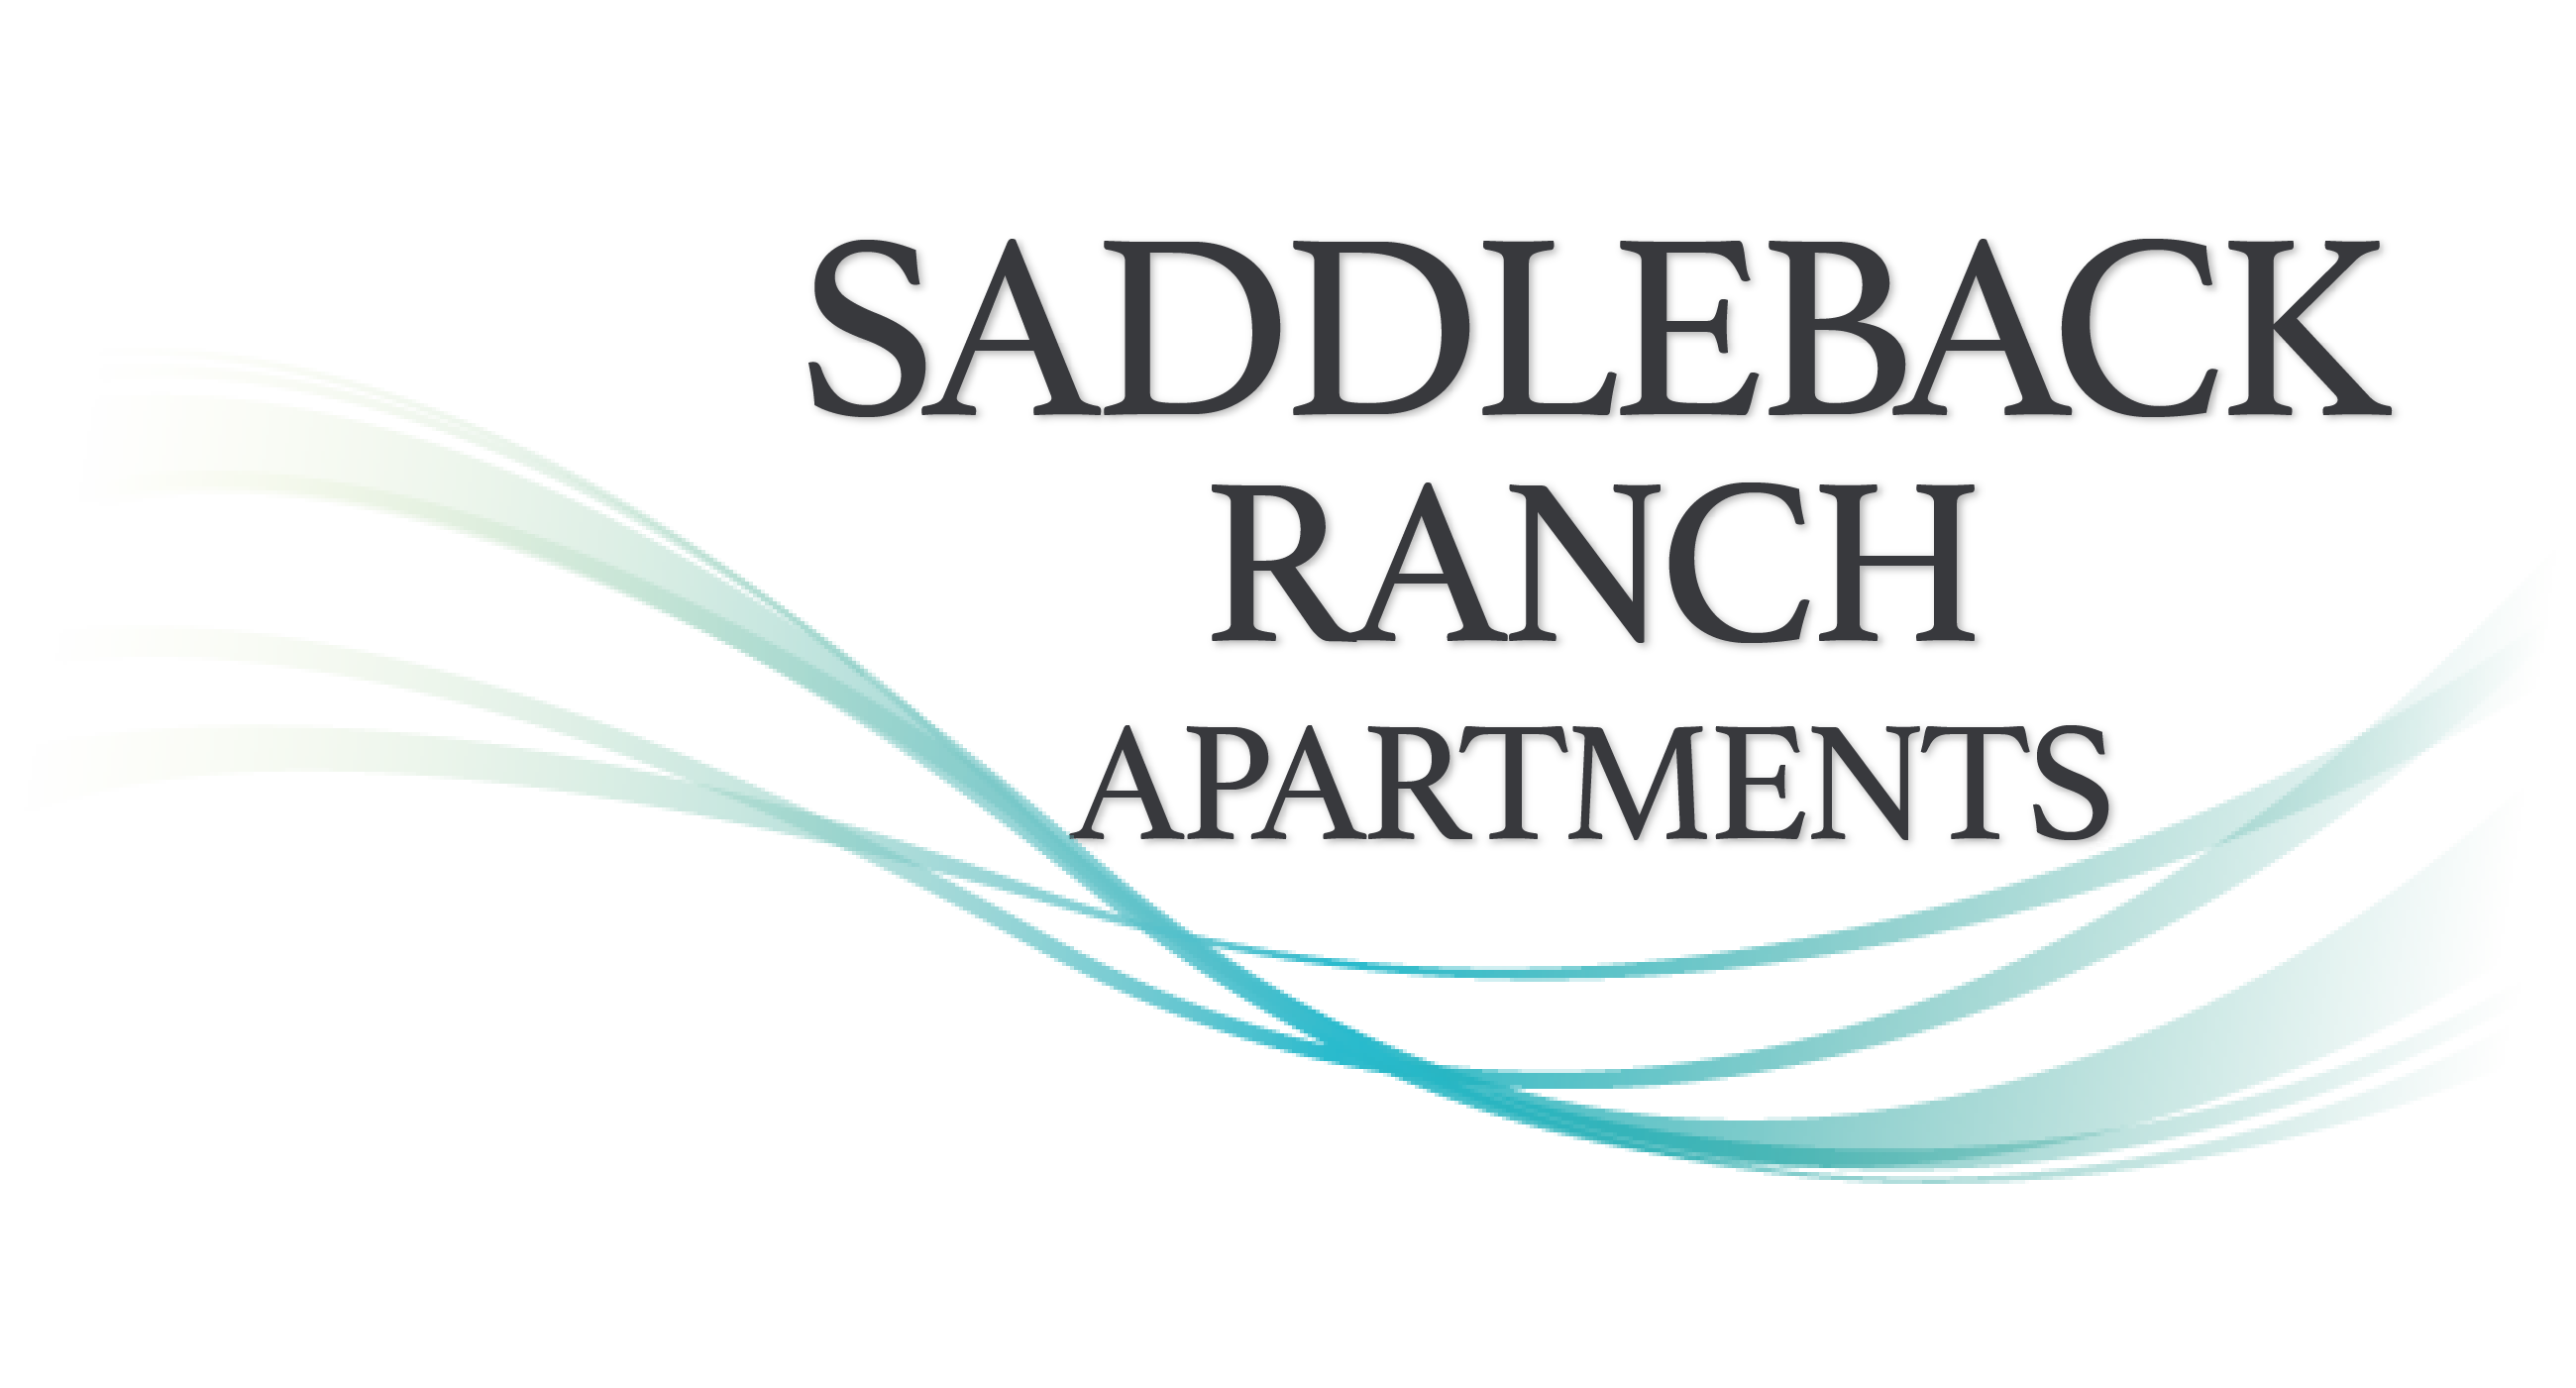 Saddleback Ranch Apartments Promotional Logo